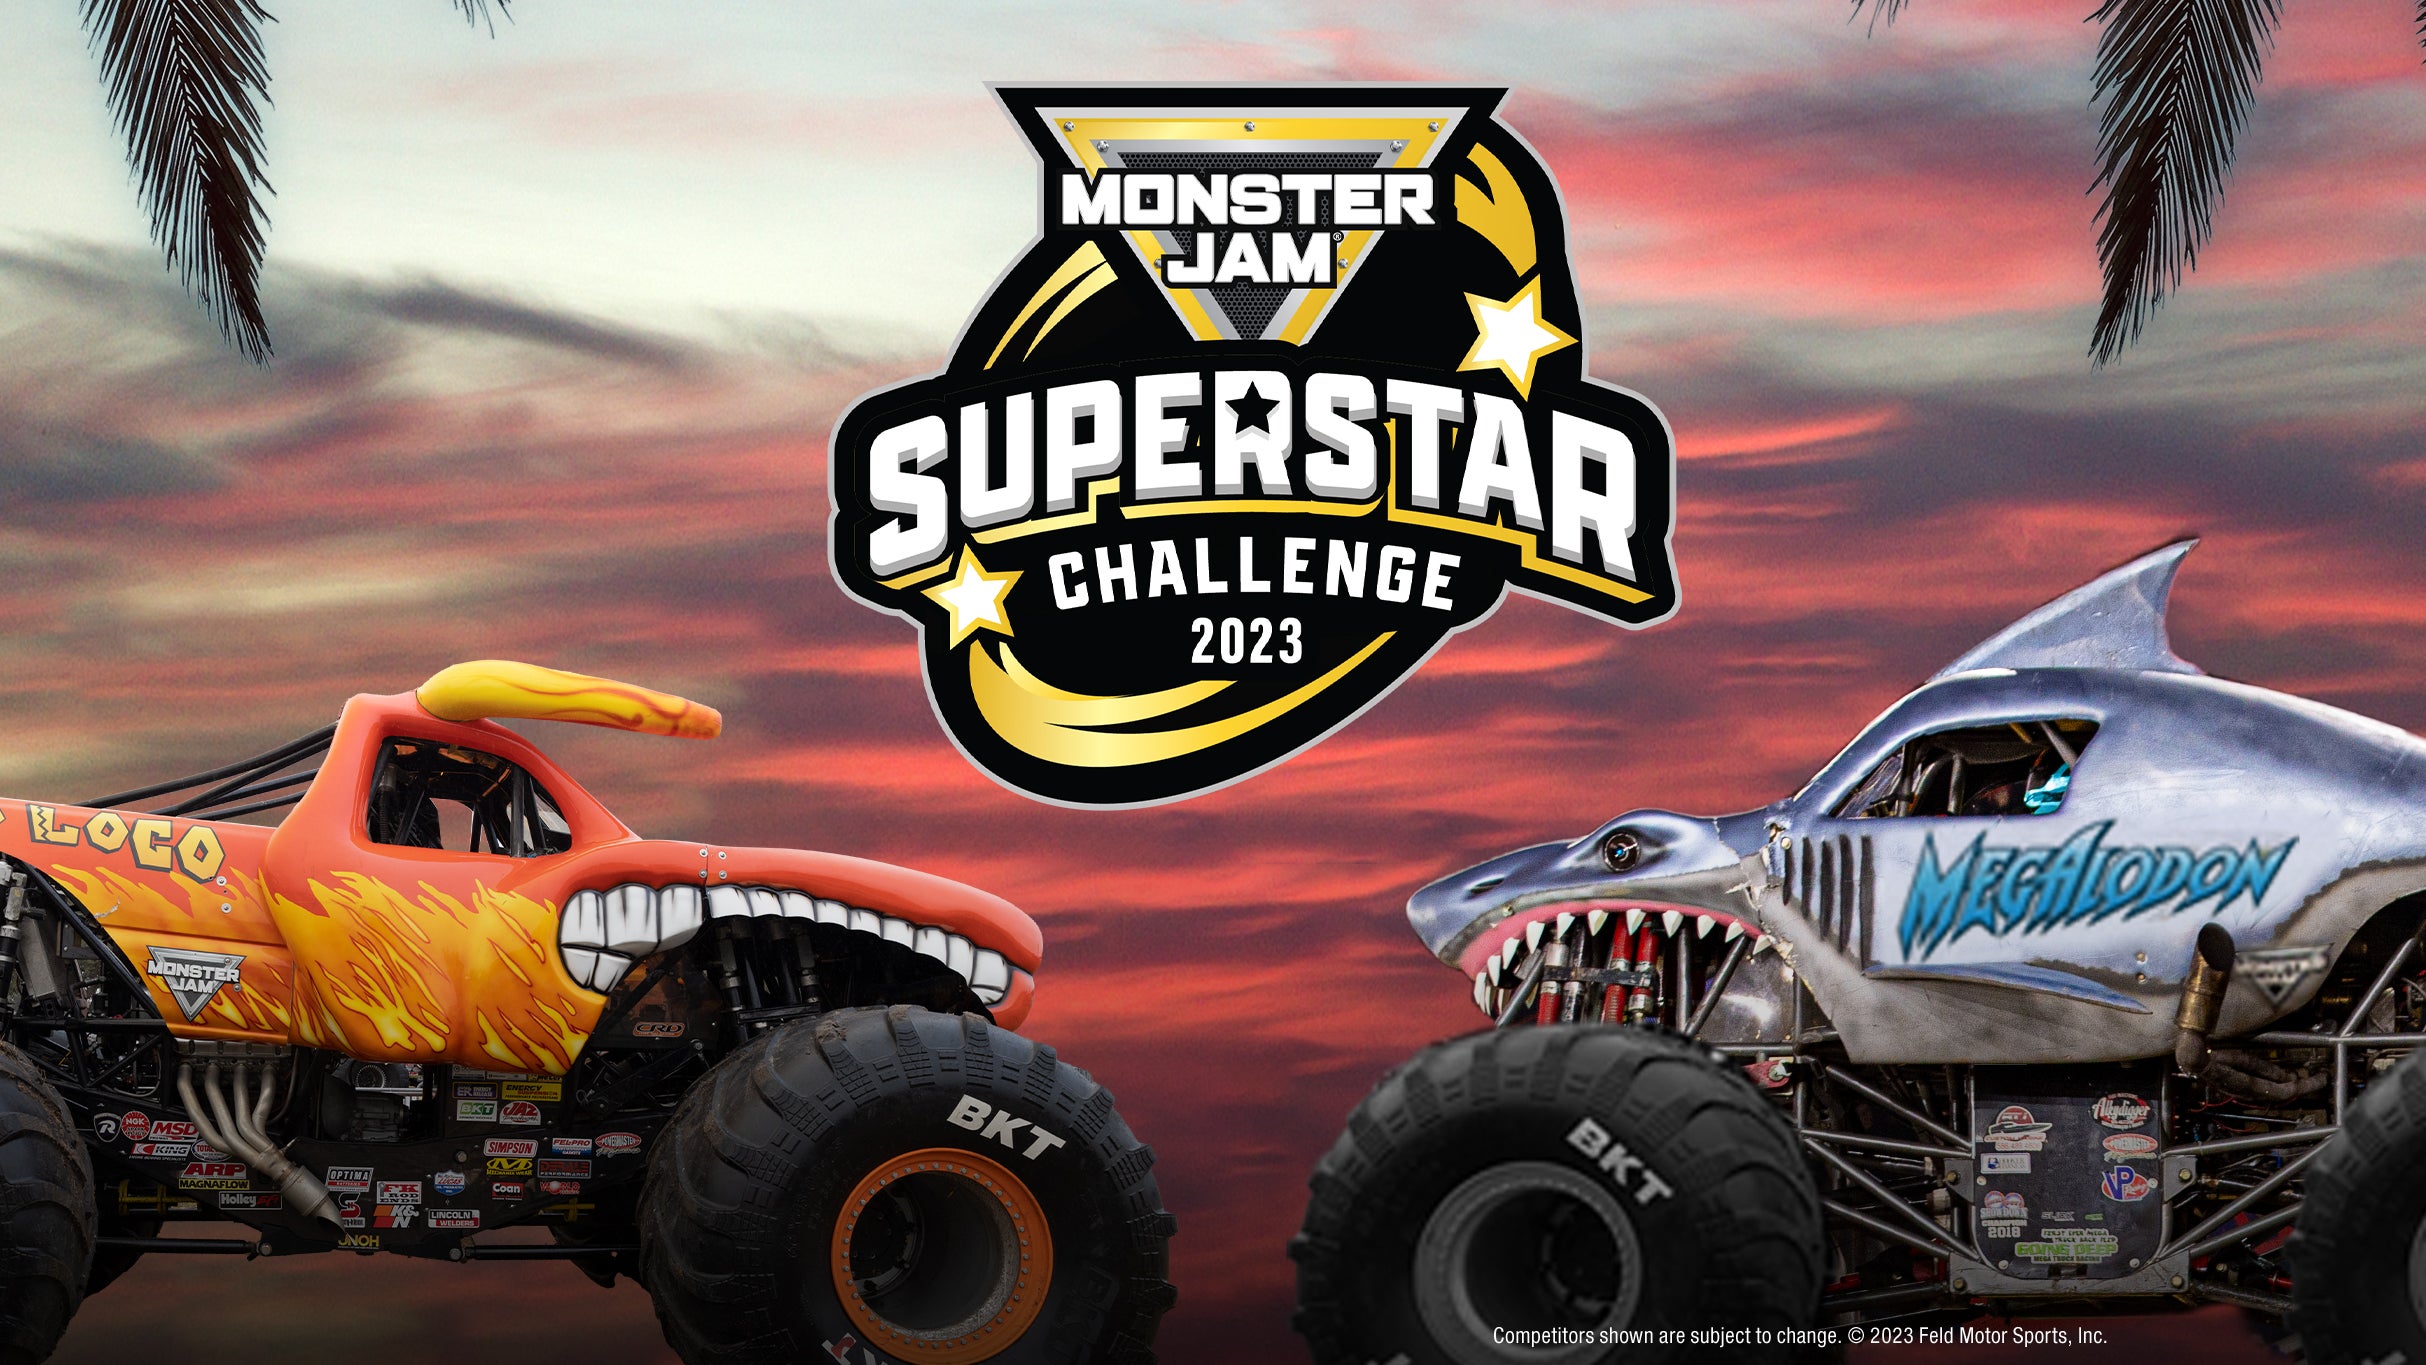 Monster Jam Superstar Challenge at Angel Stadium of Anaheim